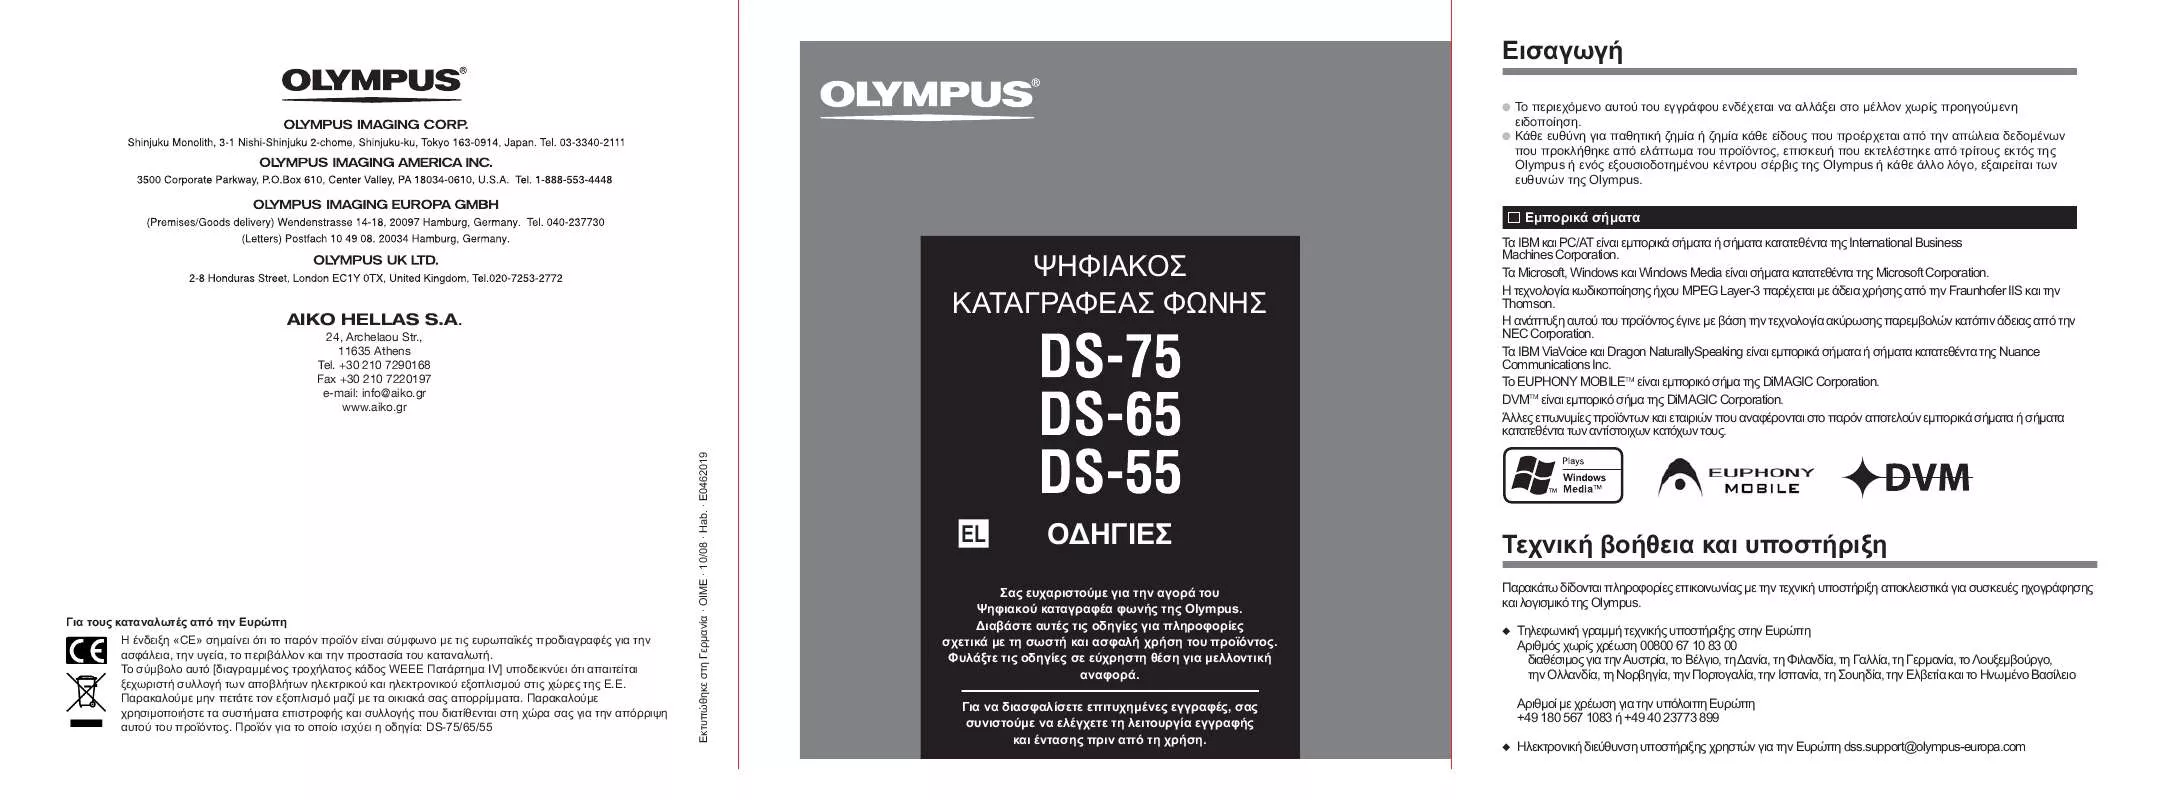 Mode d'emploi OLYMPUS DS-55